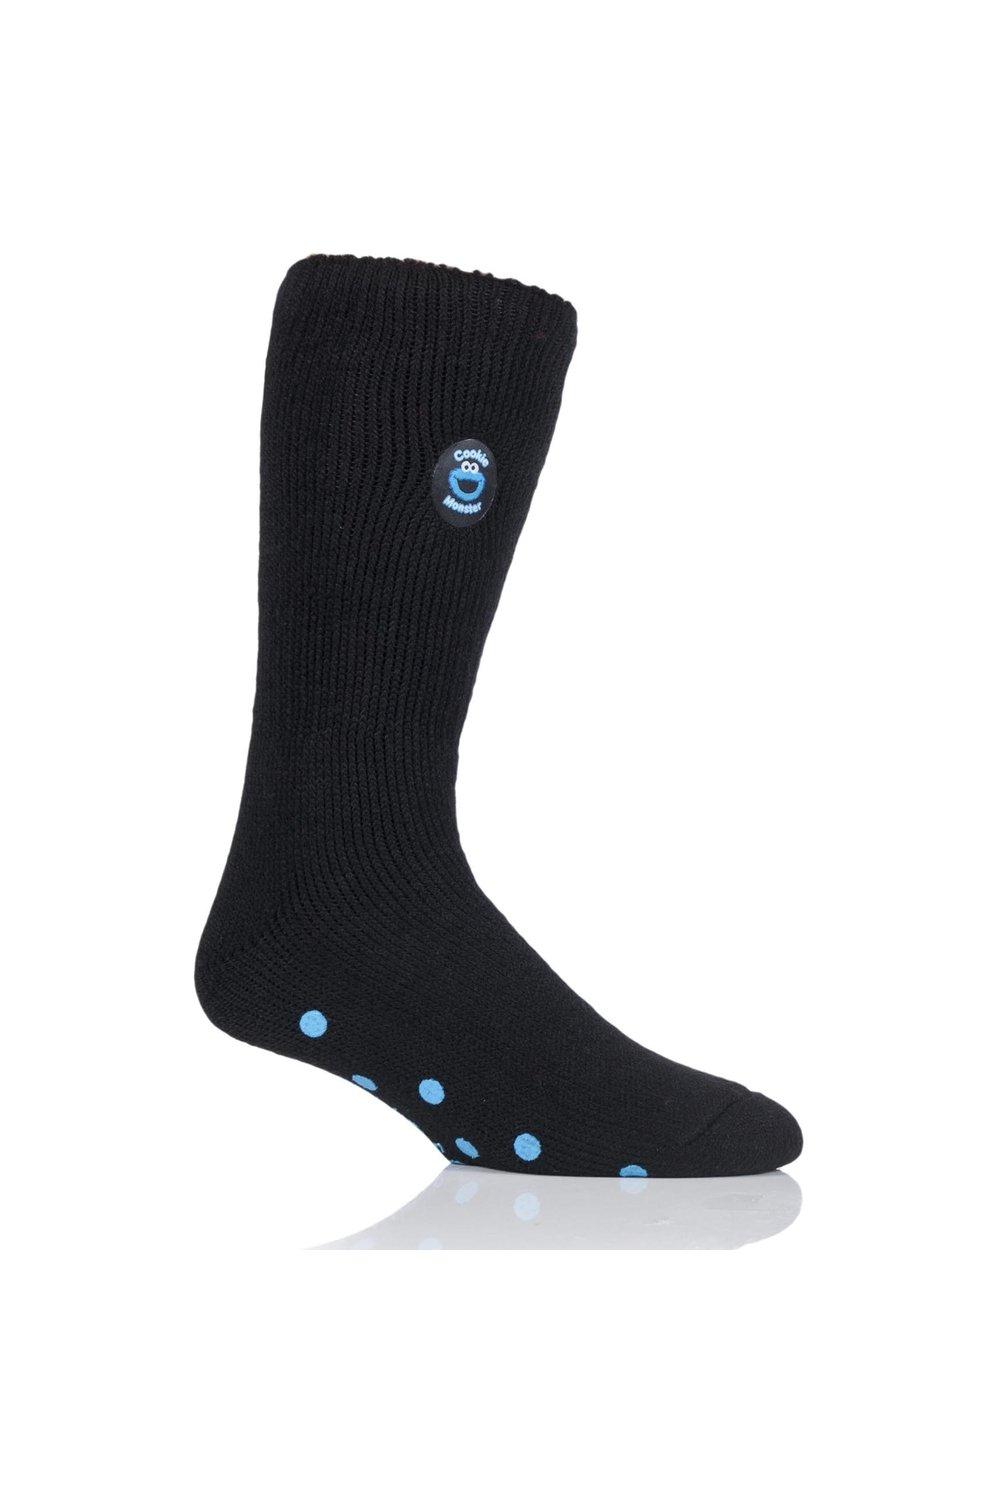 1 Pair Cookie Monster Slipper Socks